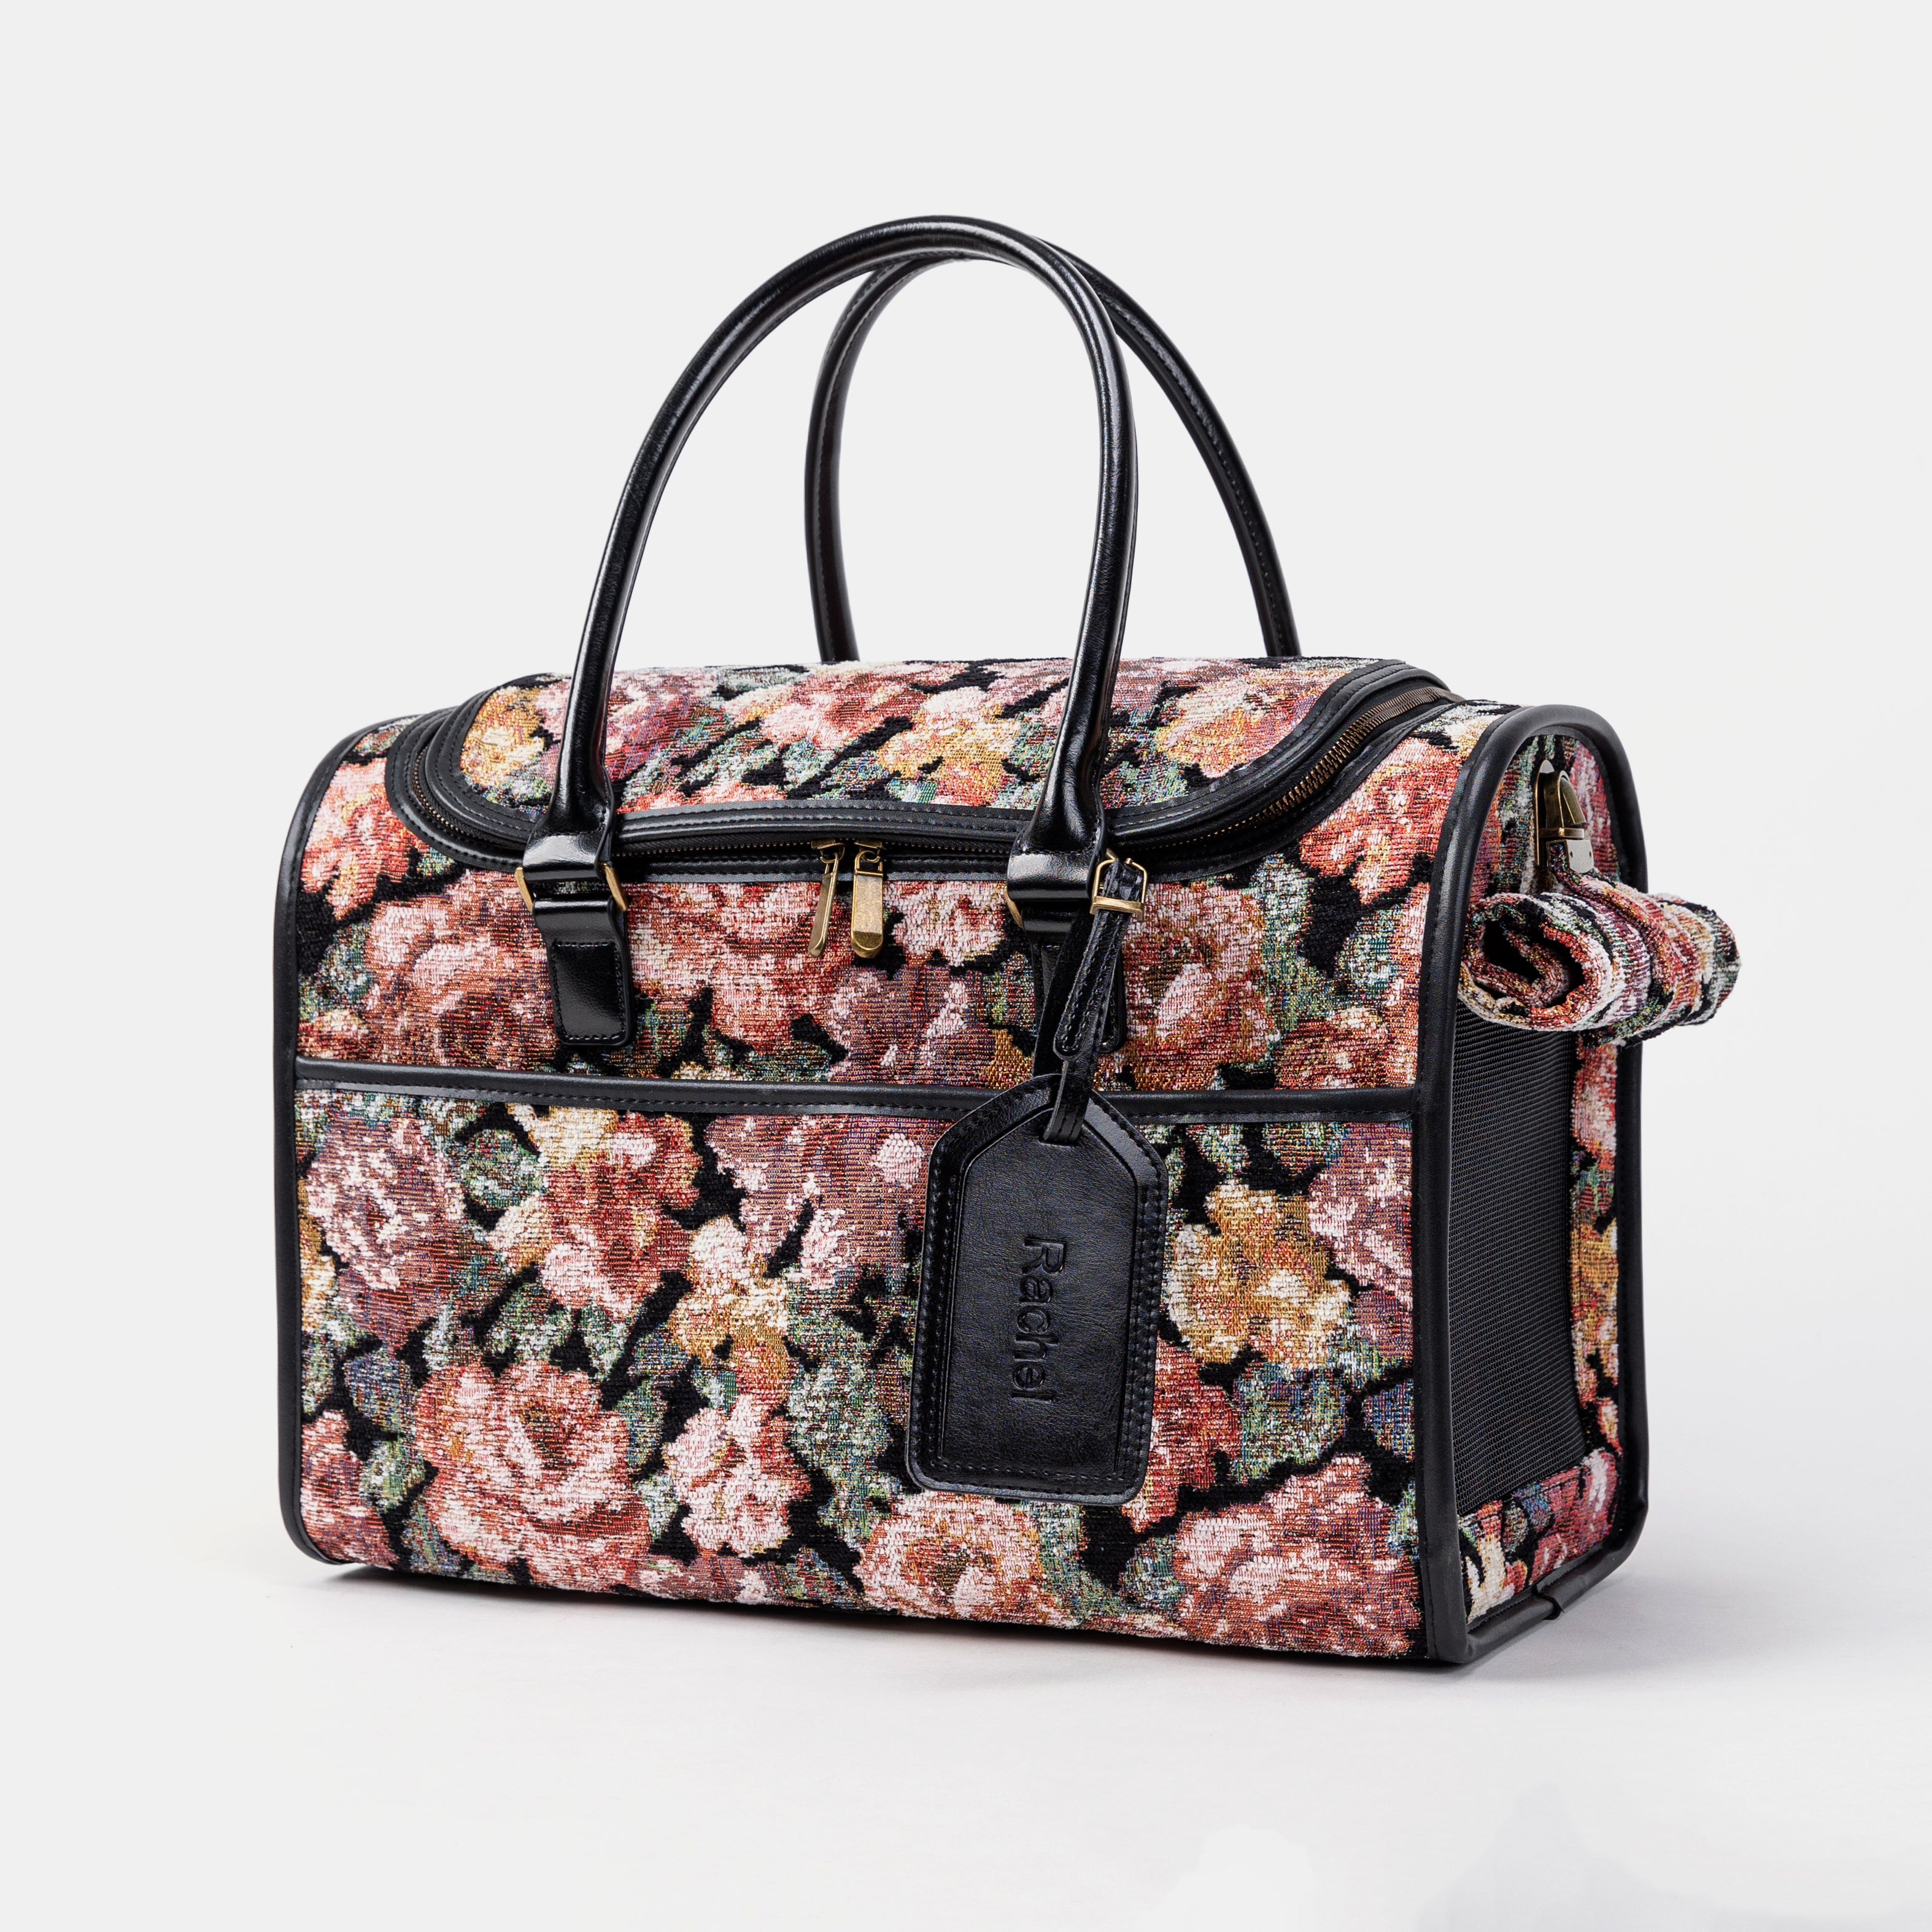 Travel Dog Carrier Bag Floral Rose Main